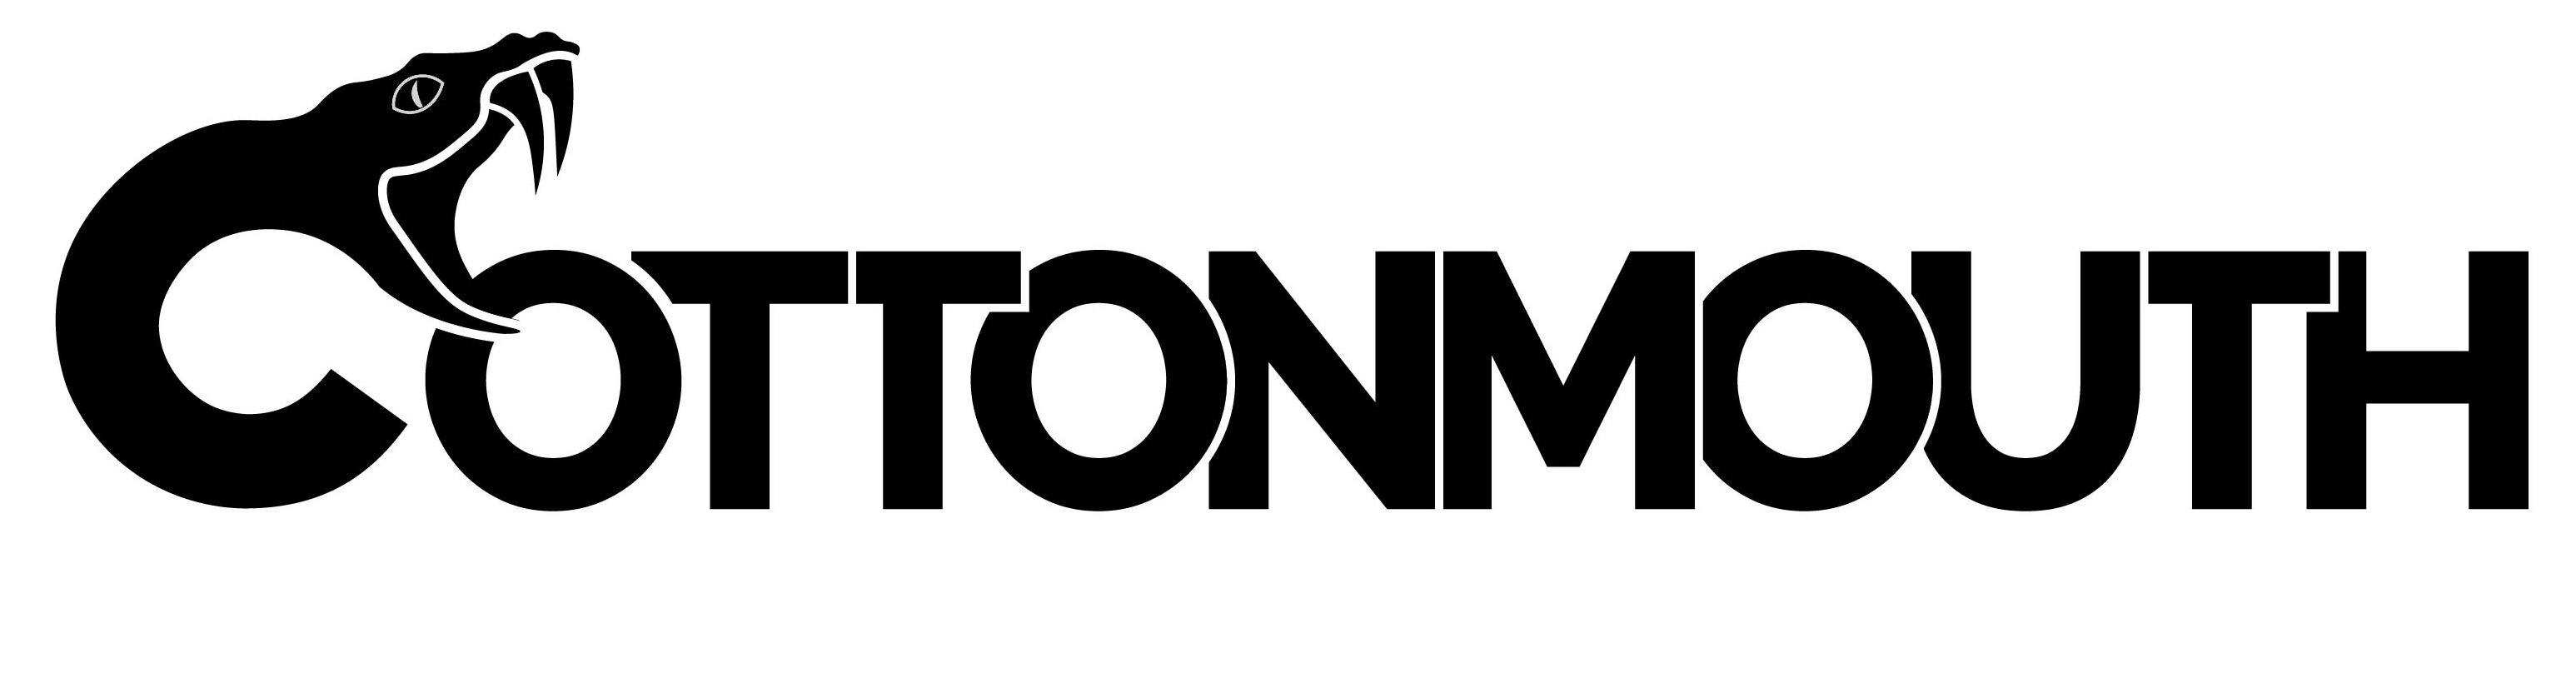 Trademark Logo COTTONMOUTH